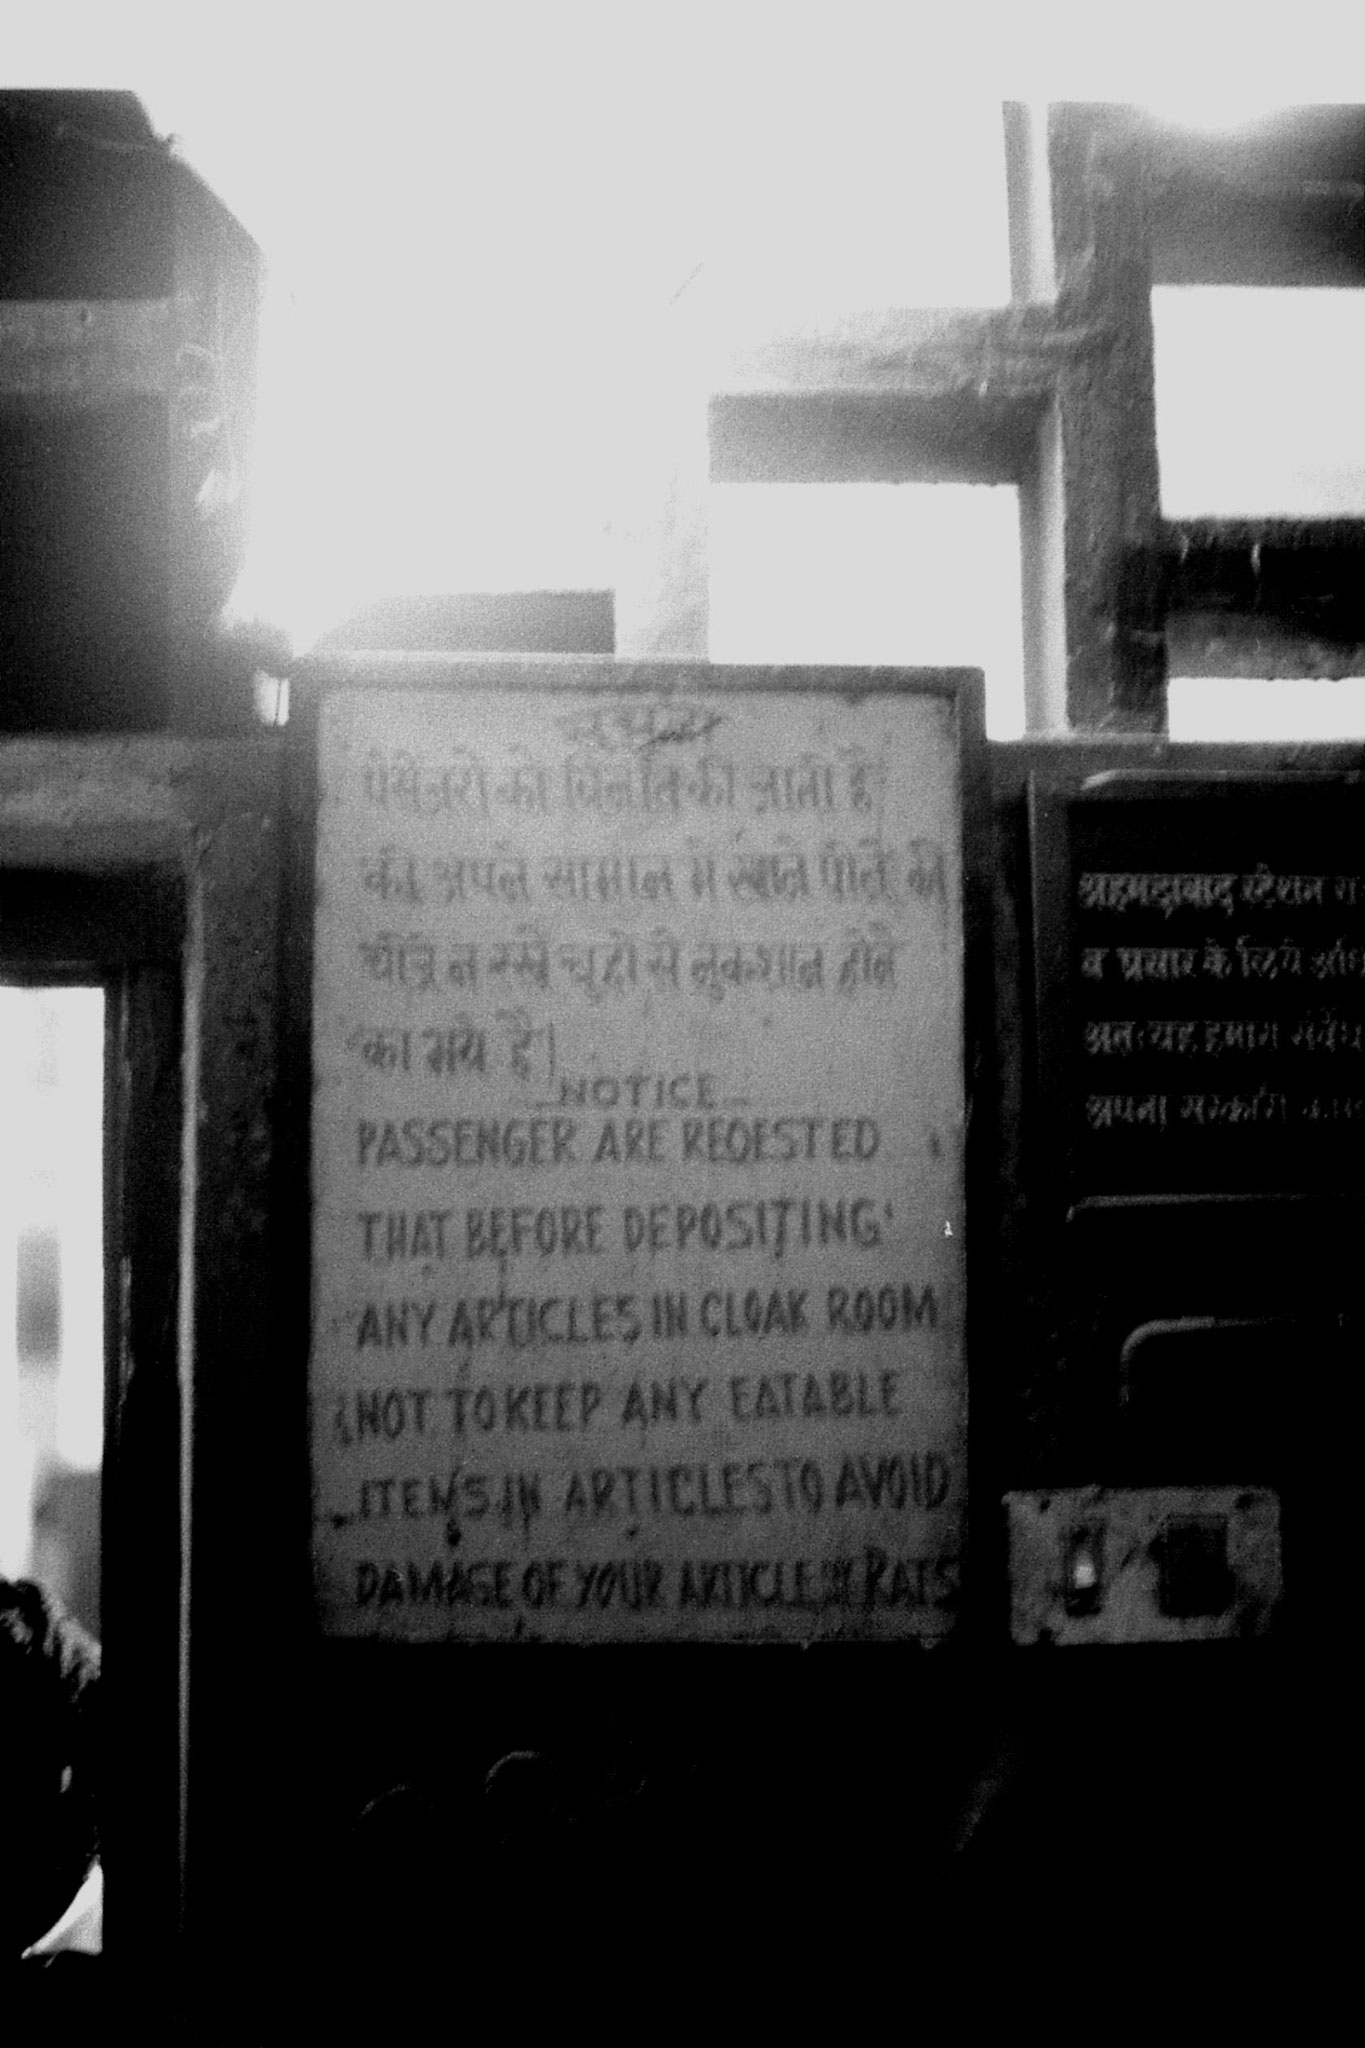 10/12/1989: 19: Ahmedabad station sign rat warning